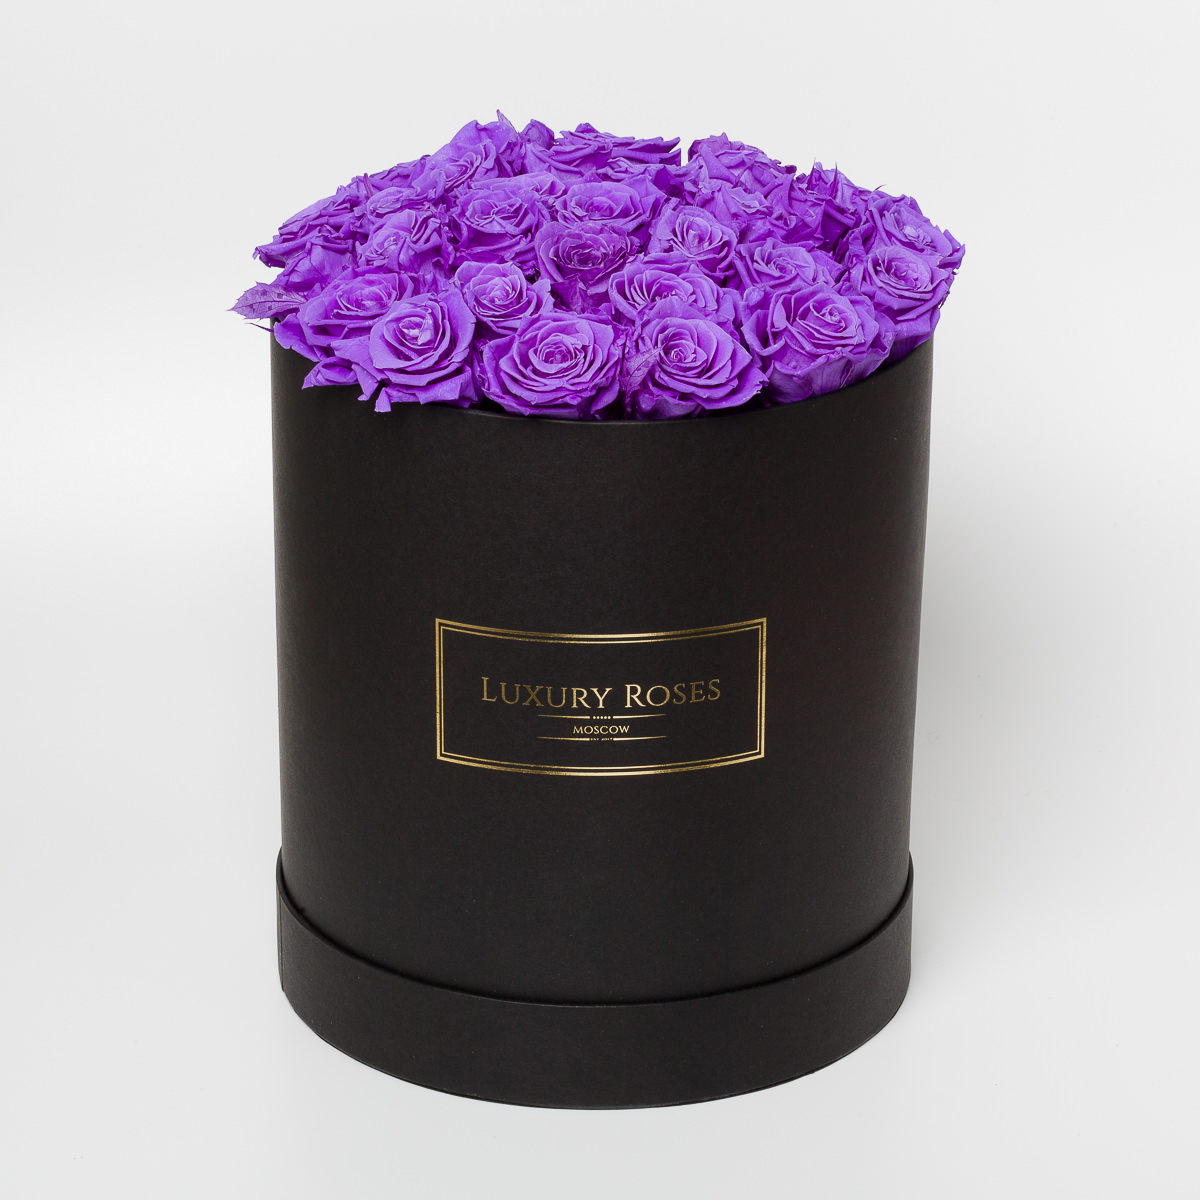 Luxury rose. Букет в фиолетовой коробке. Букет в шляпной коробке сиреневого цвета. Фиолетовые букеты цветов в коробке. Фиолетовые розы в коробке.